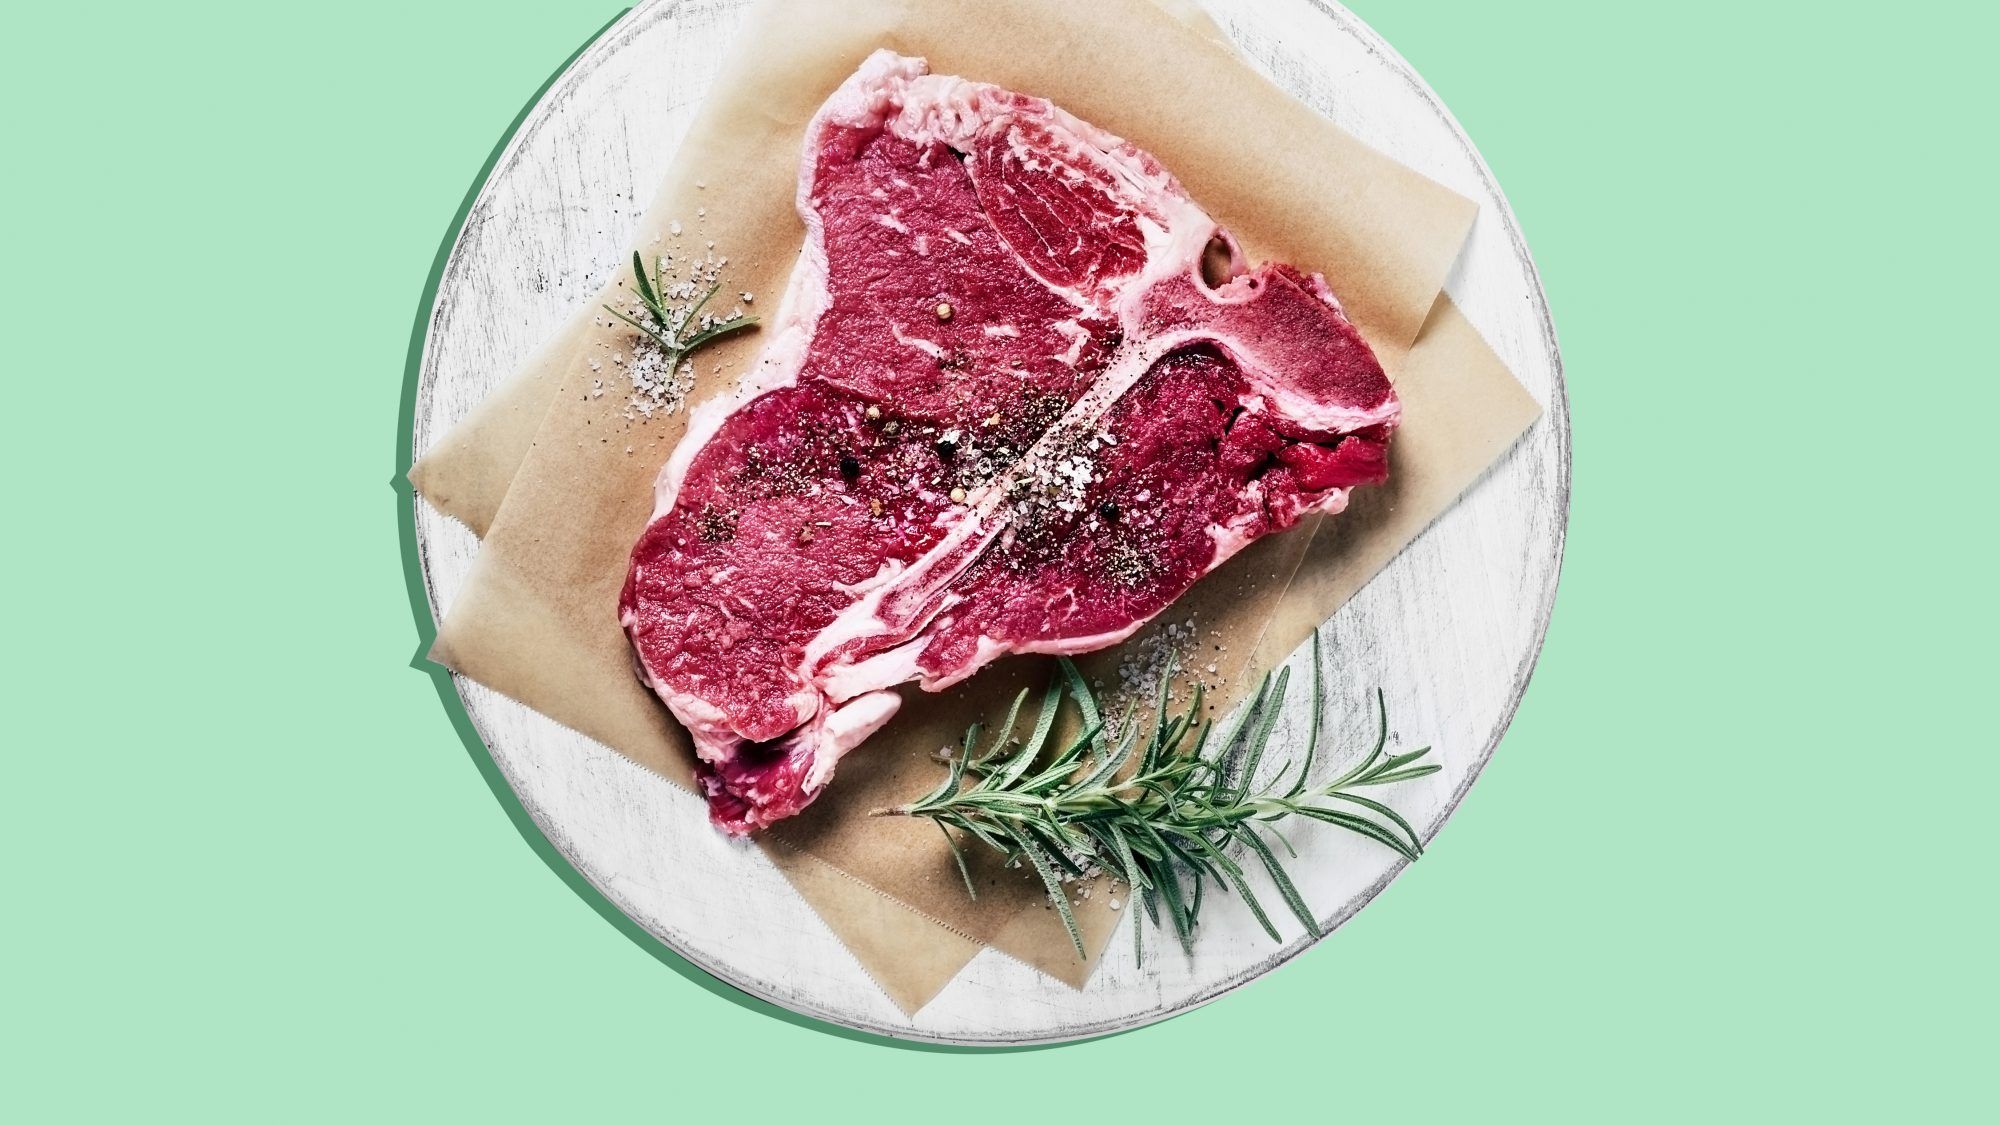 Dlaczego przed gotowaniem należy zawsze pozwolić czerwonemu mięsu osiągnąć temperaturę pokojową